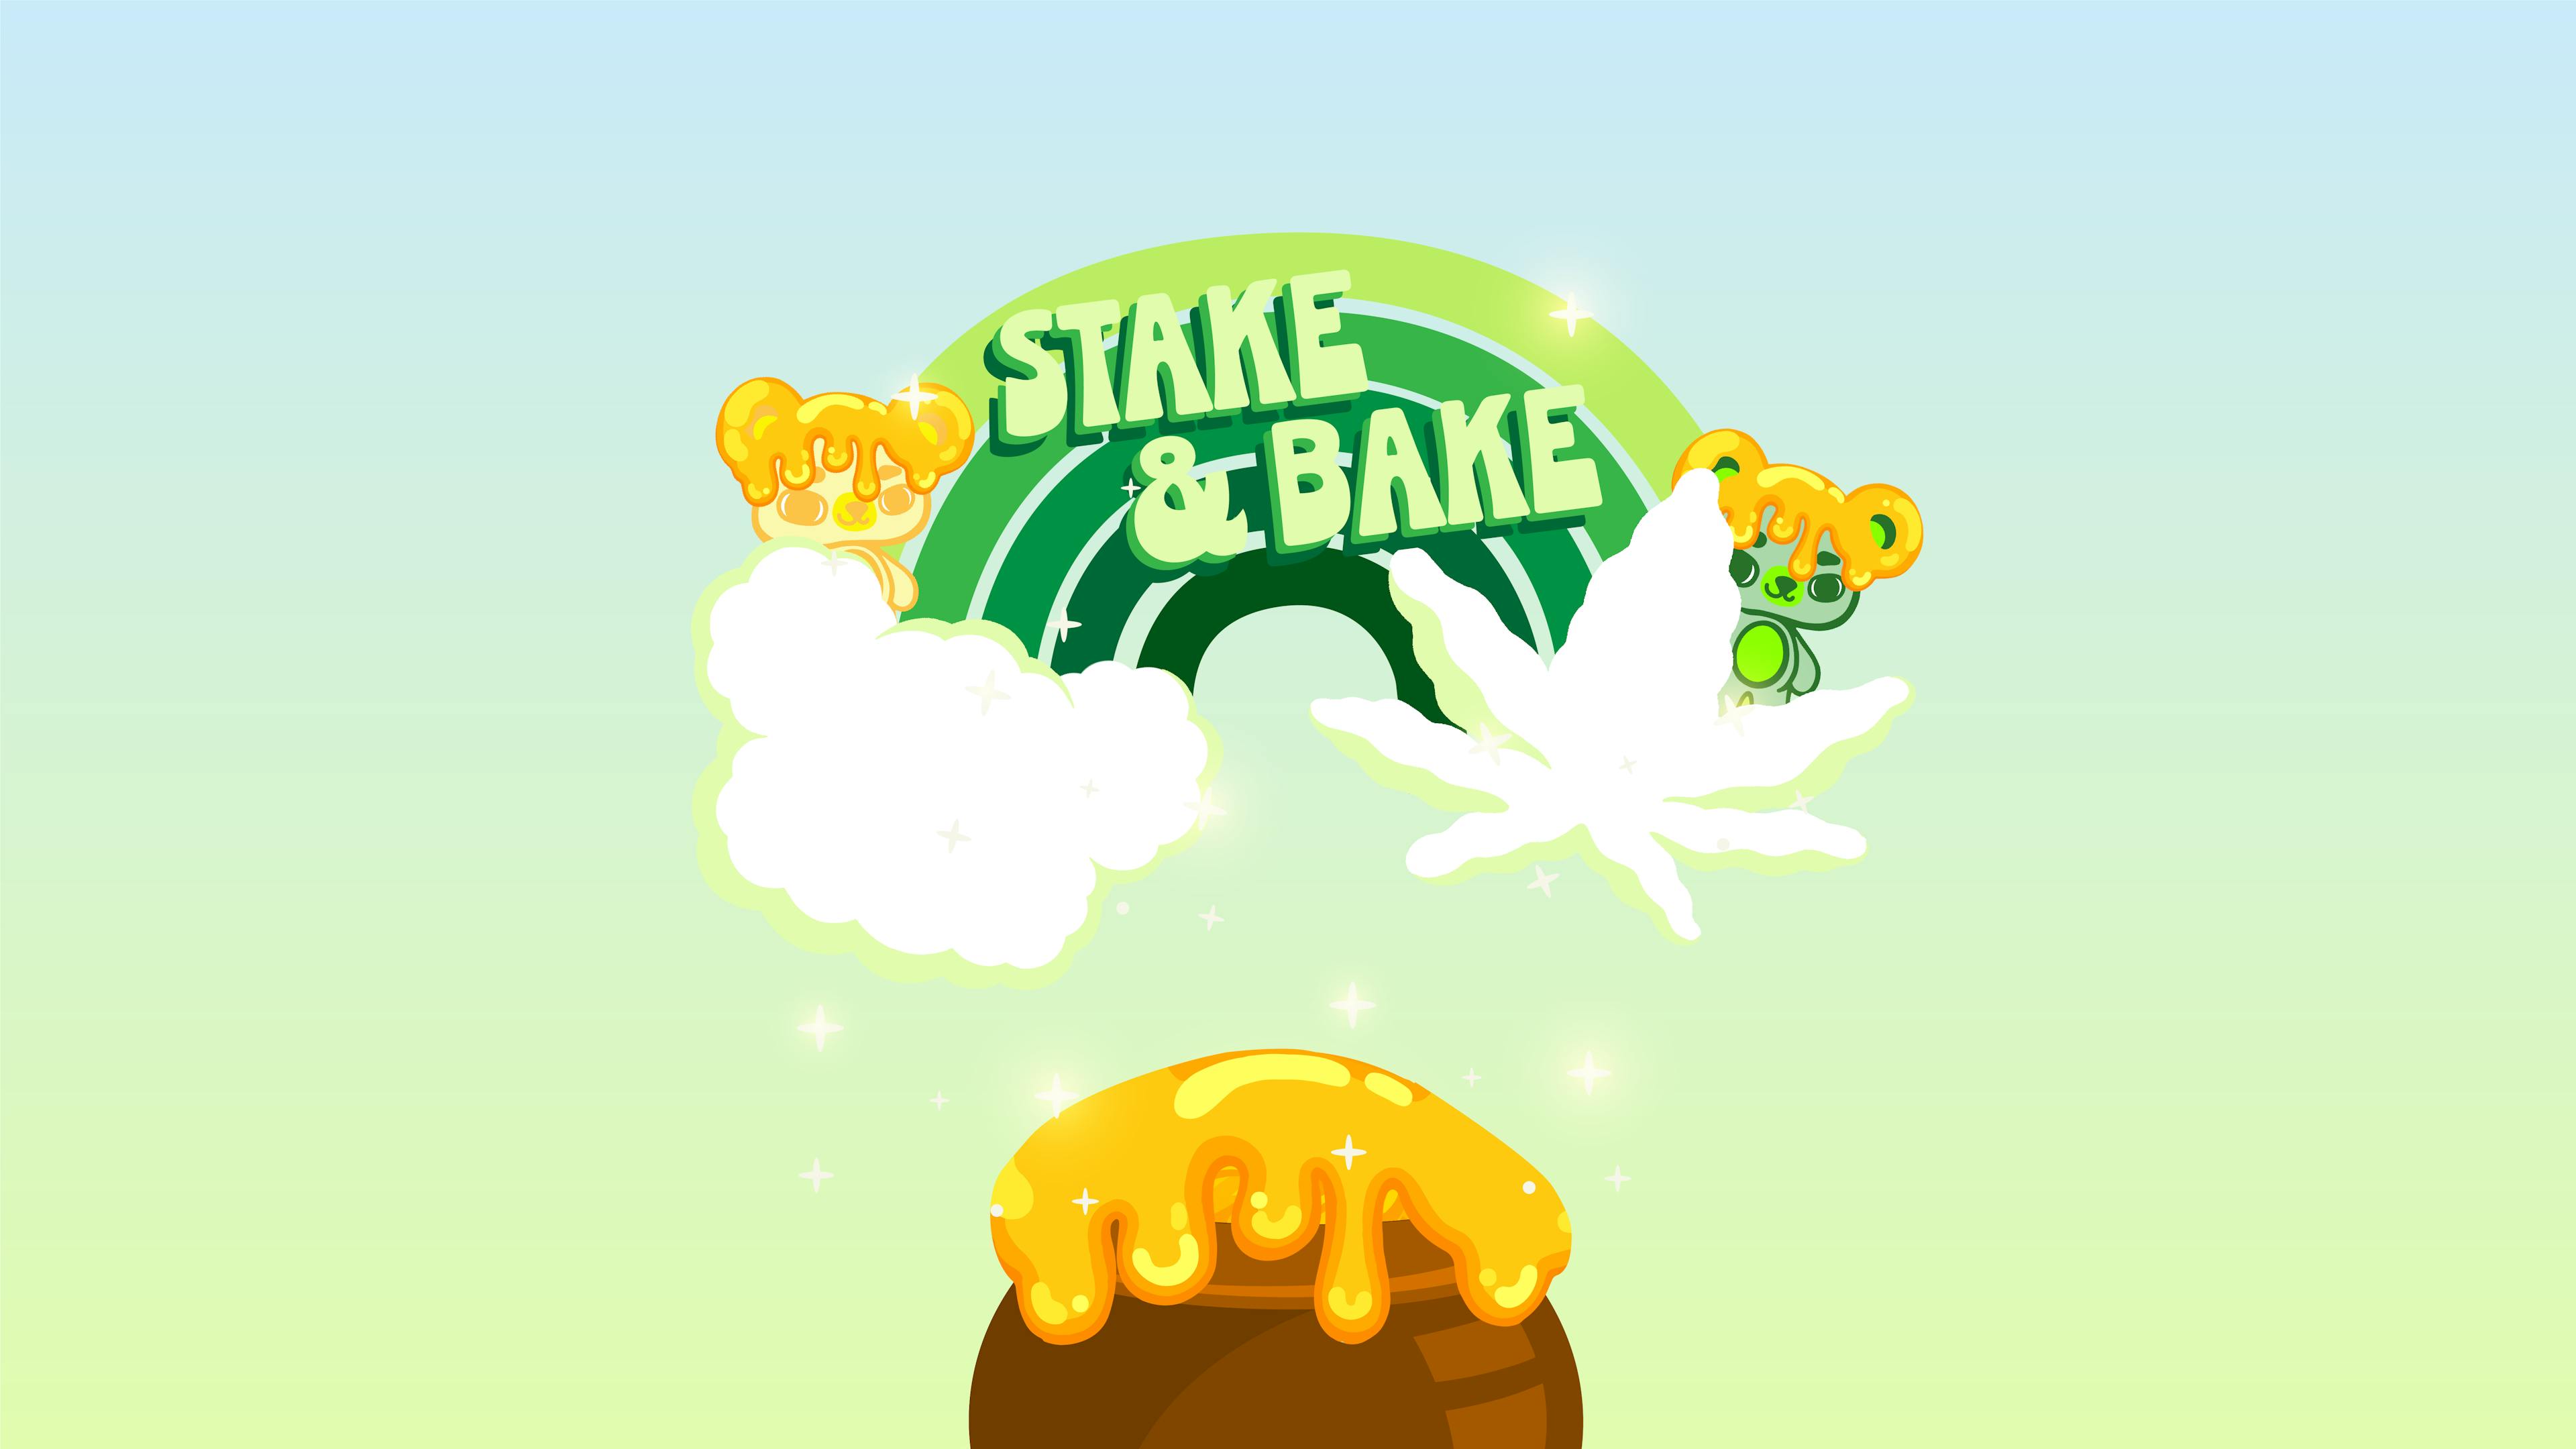 Stake & bake